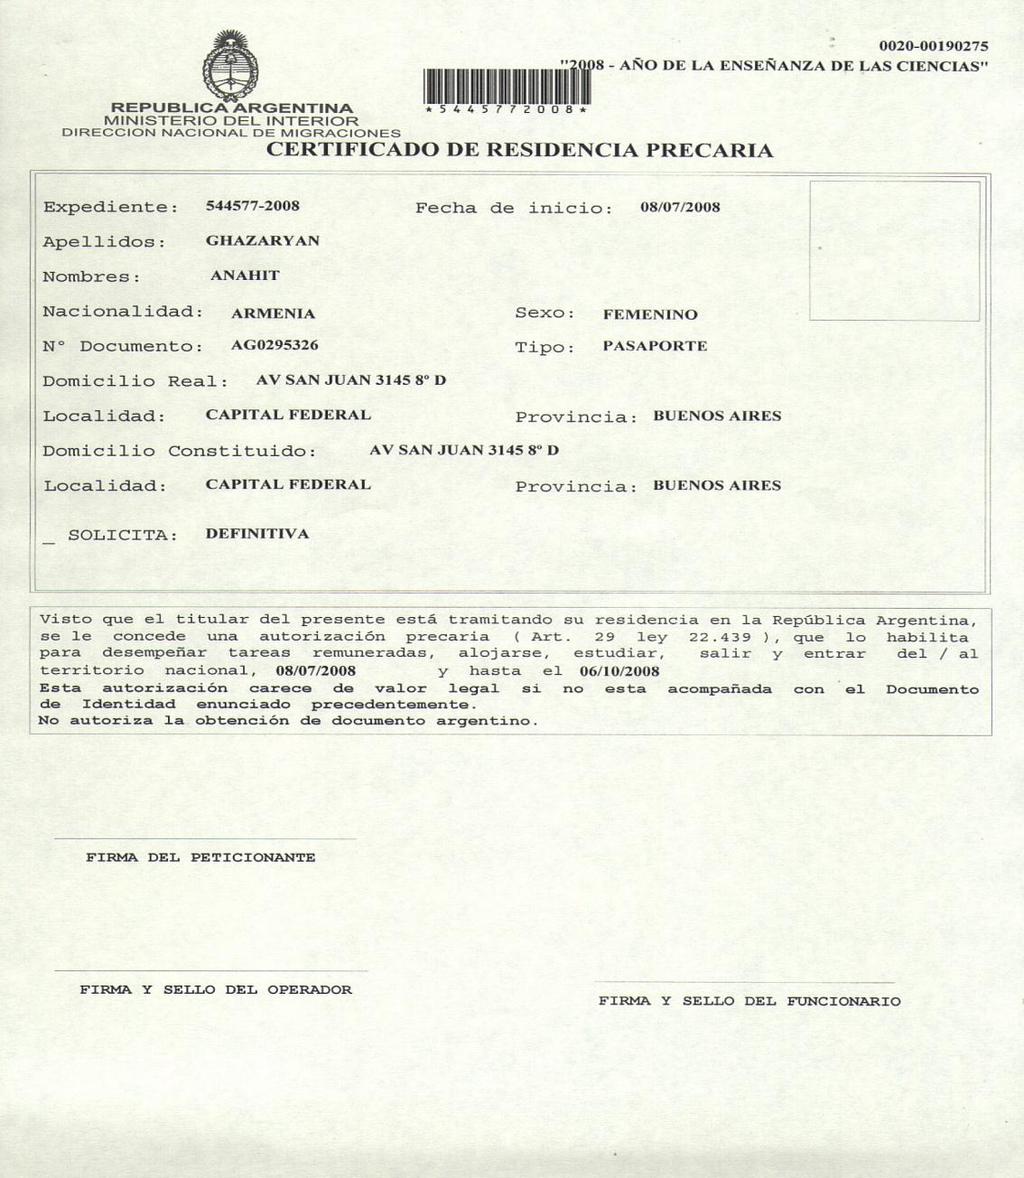 Certificado de Residencia Precaria (Art. 20 de la Ley 25.